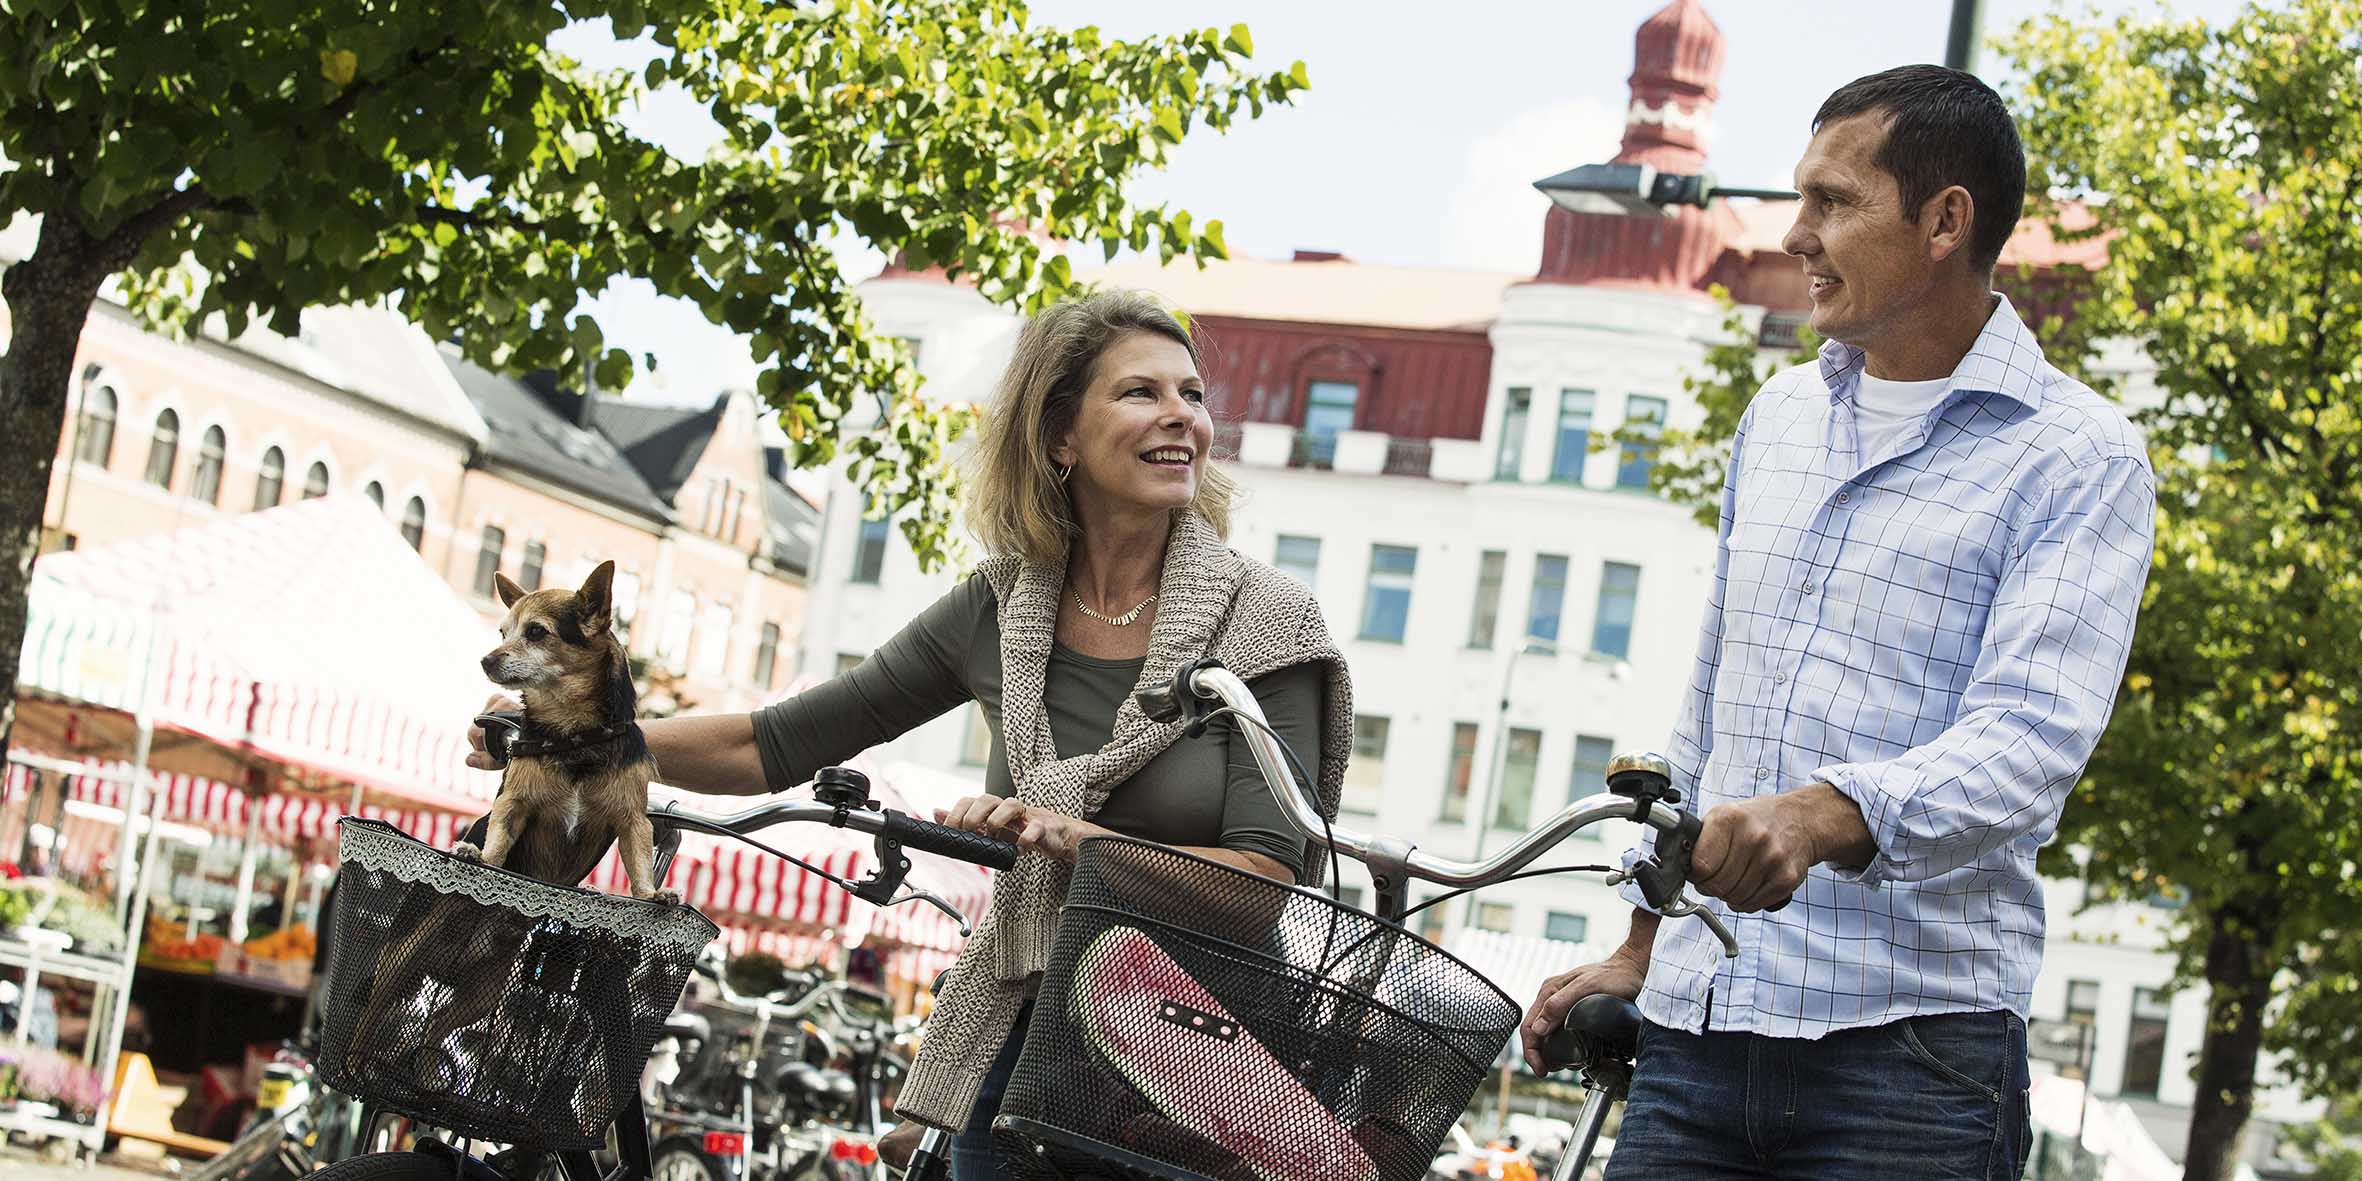 En kvinna och en man går och leder sina cyklar i en stadsmiljö